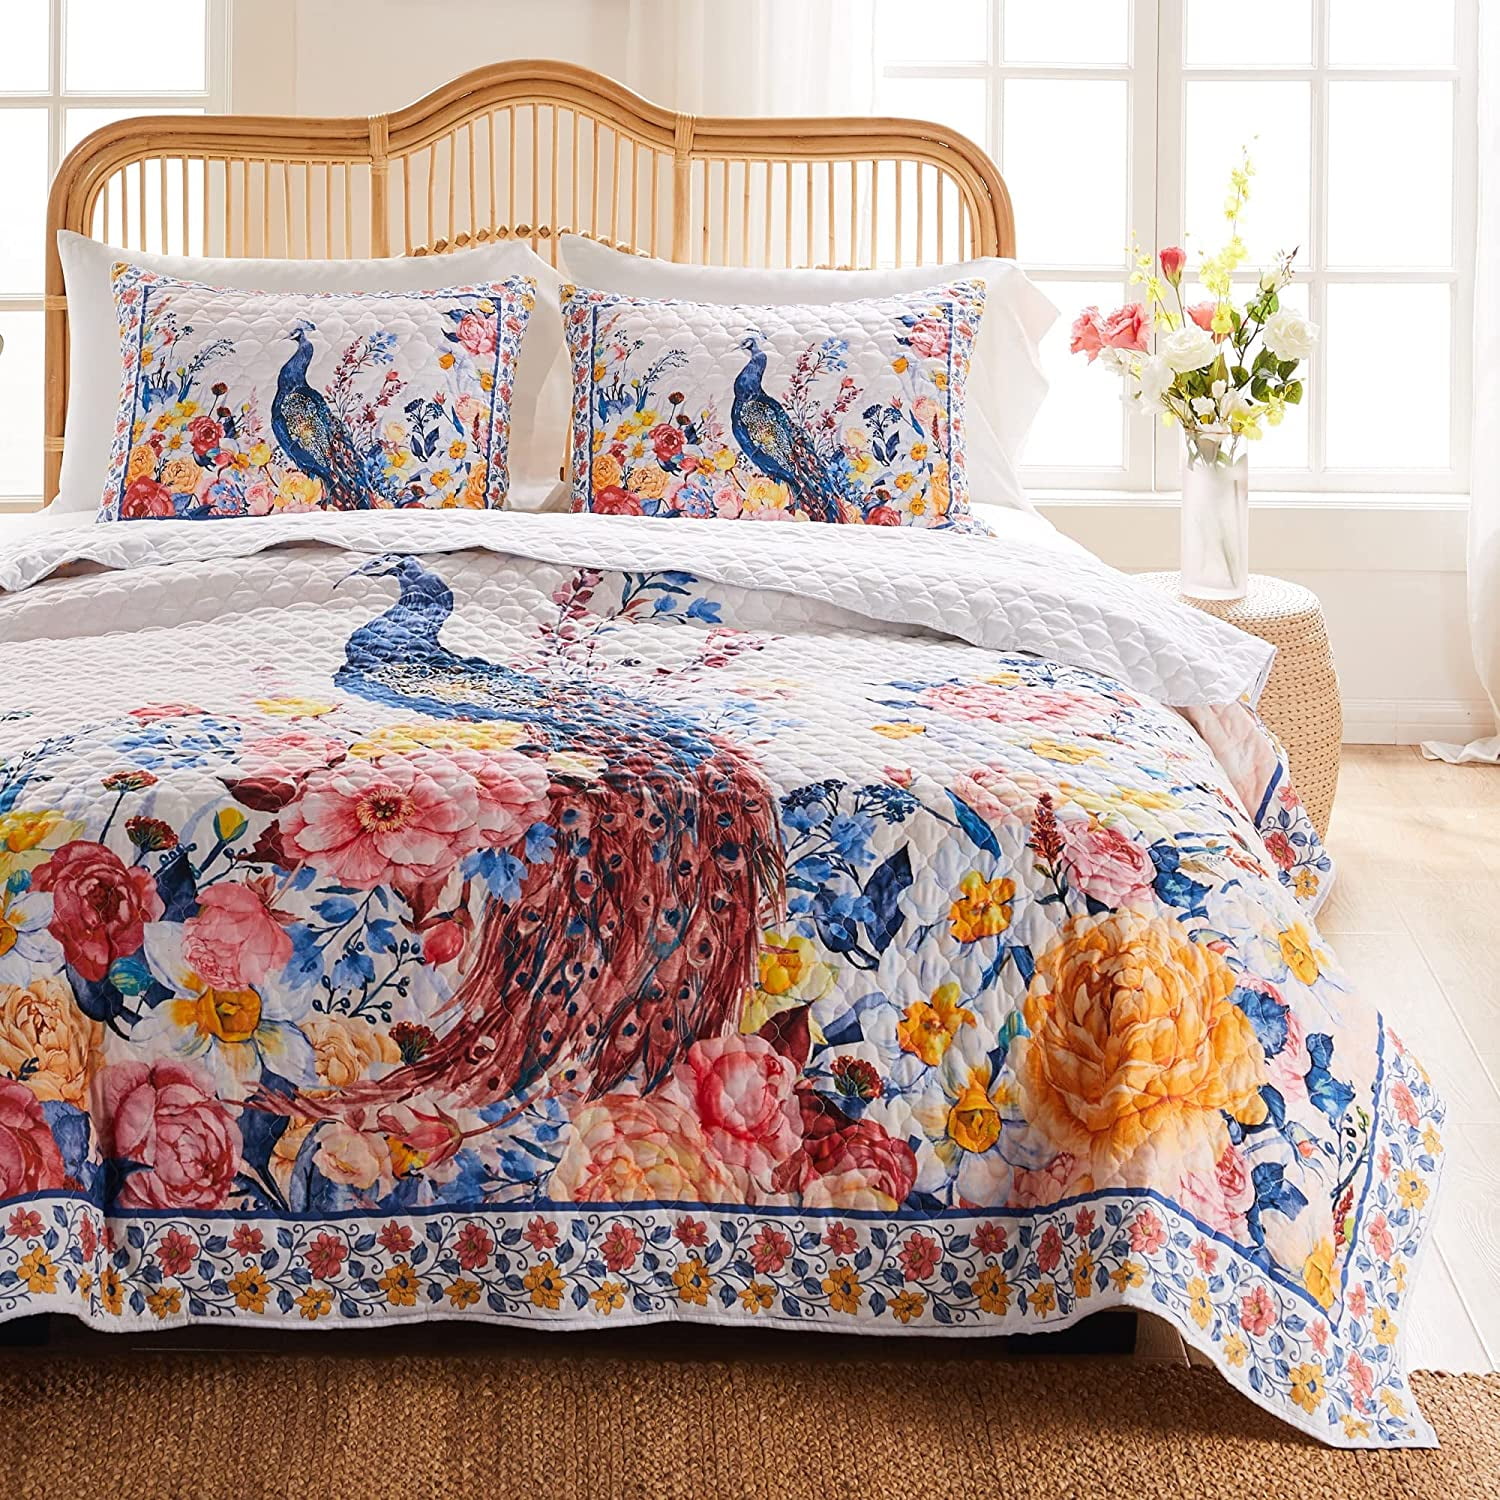 Details about   Floral Bedspread Indian Handmade Pure-Cotton Vintage Single-Size Kantha Blanket 